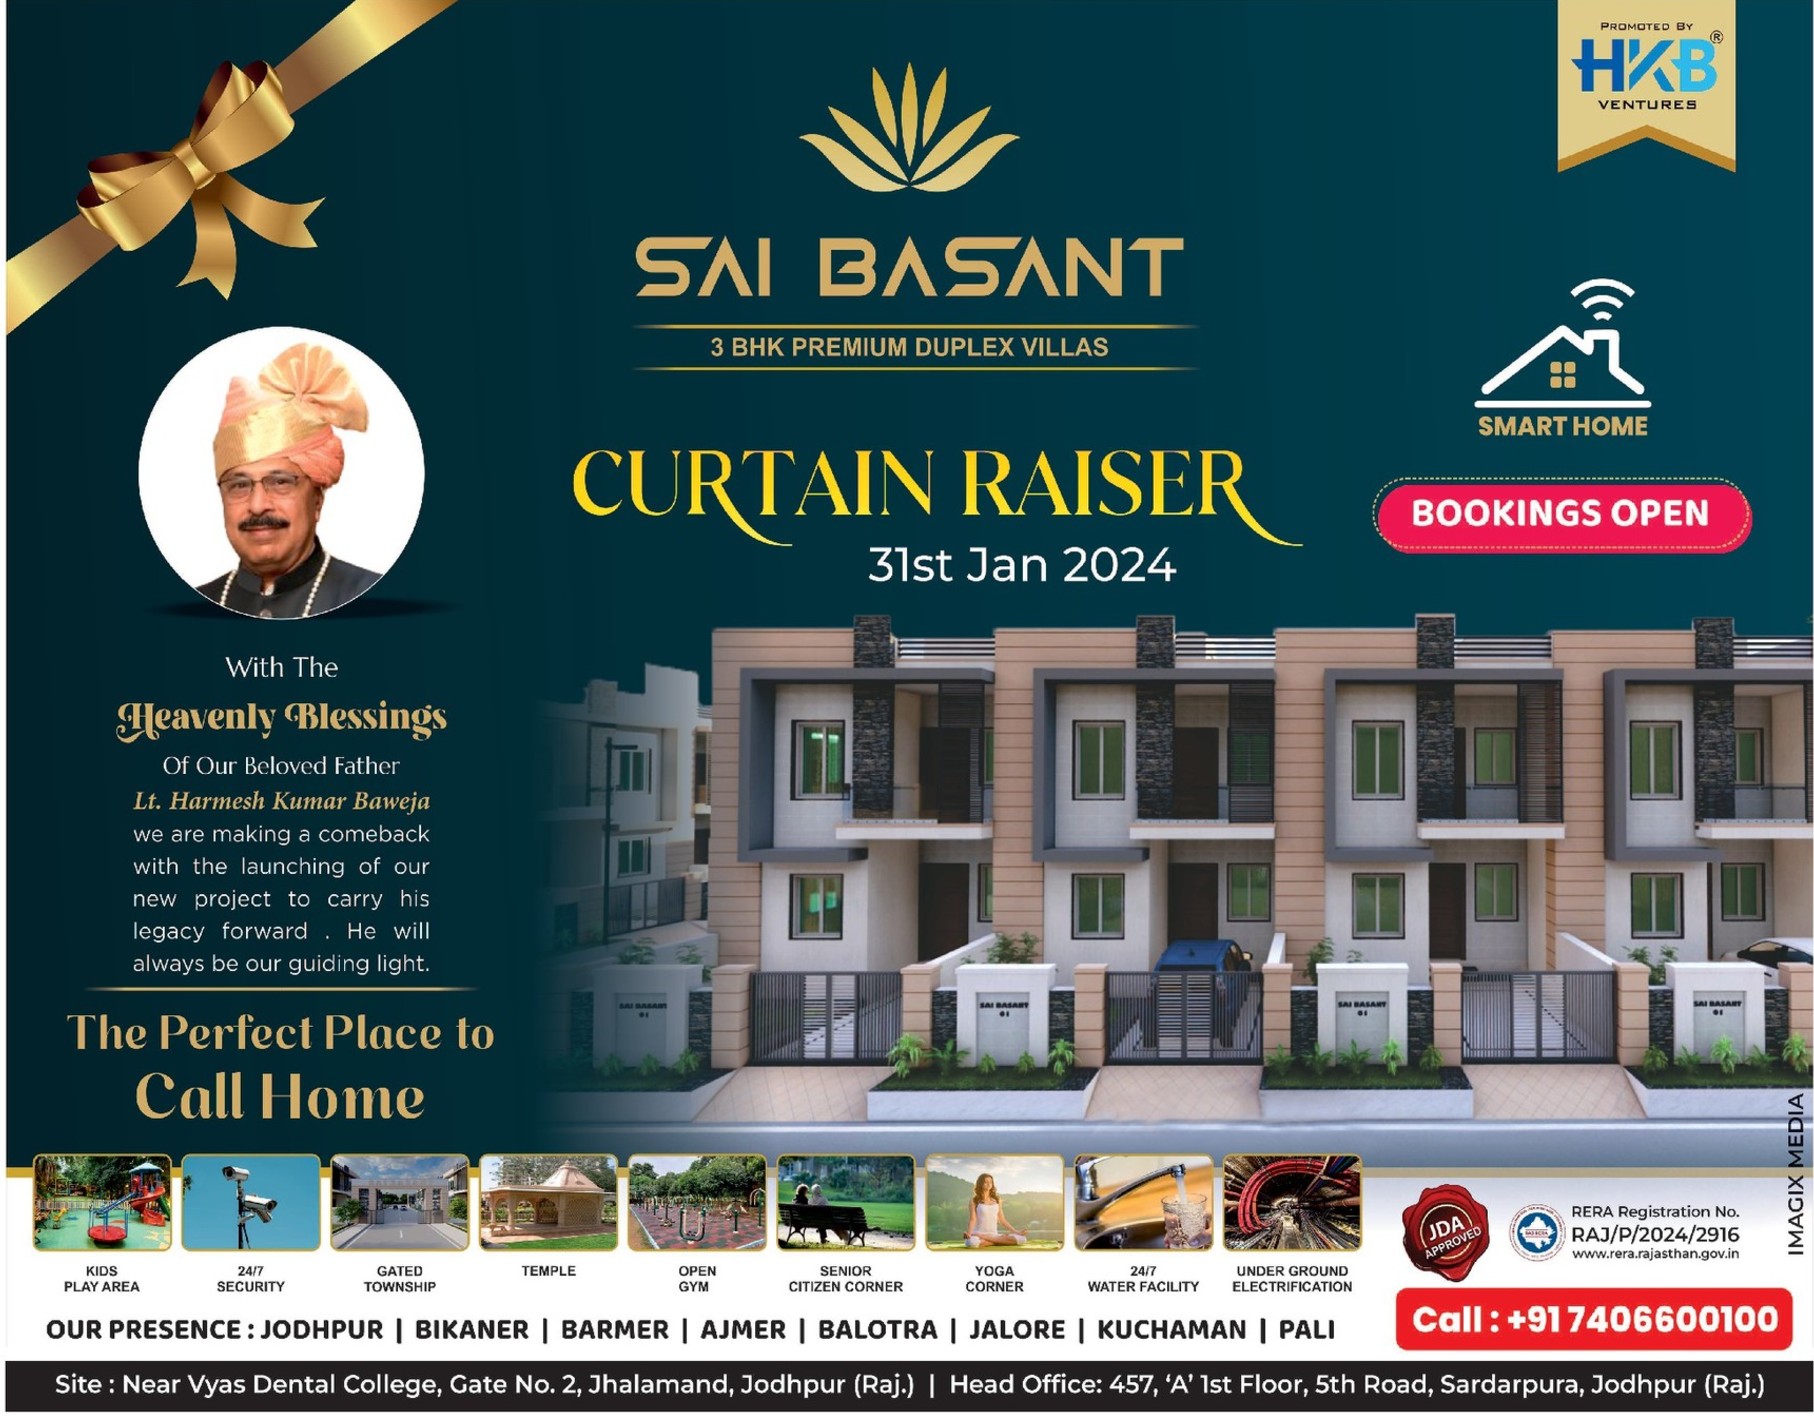 sai-basant-premium-duplex-villas-ad-rajasthan-patrika-jodhpur-30-01-2024